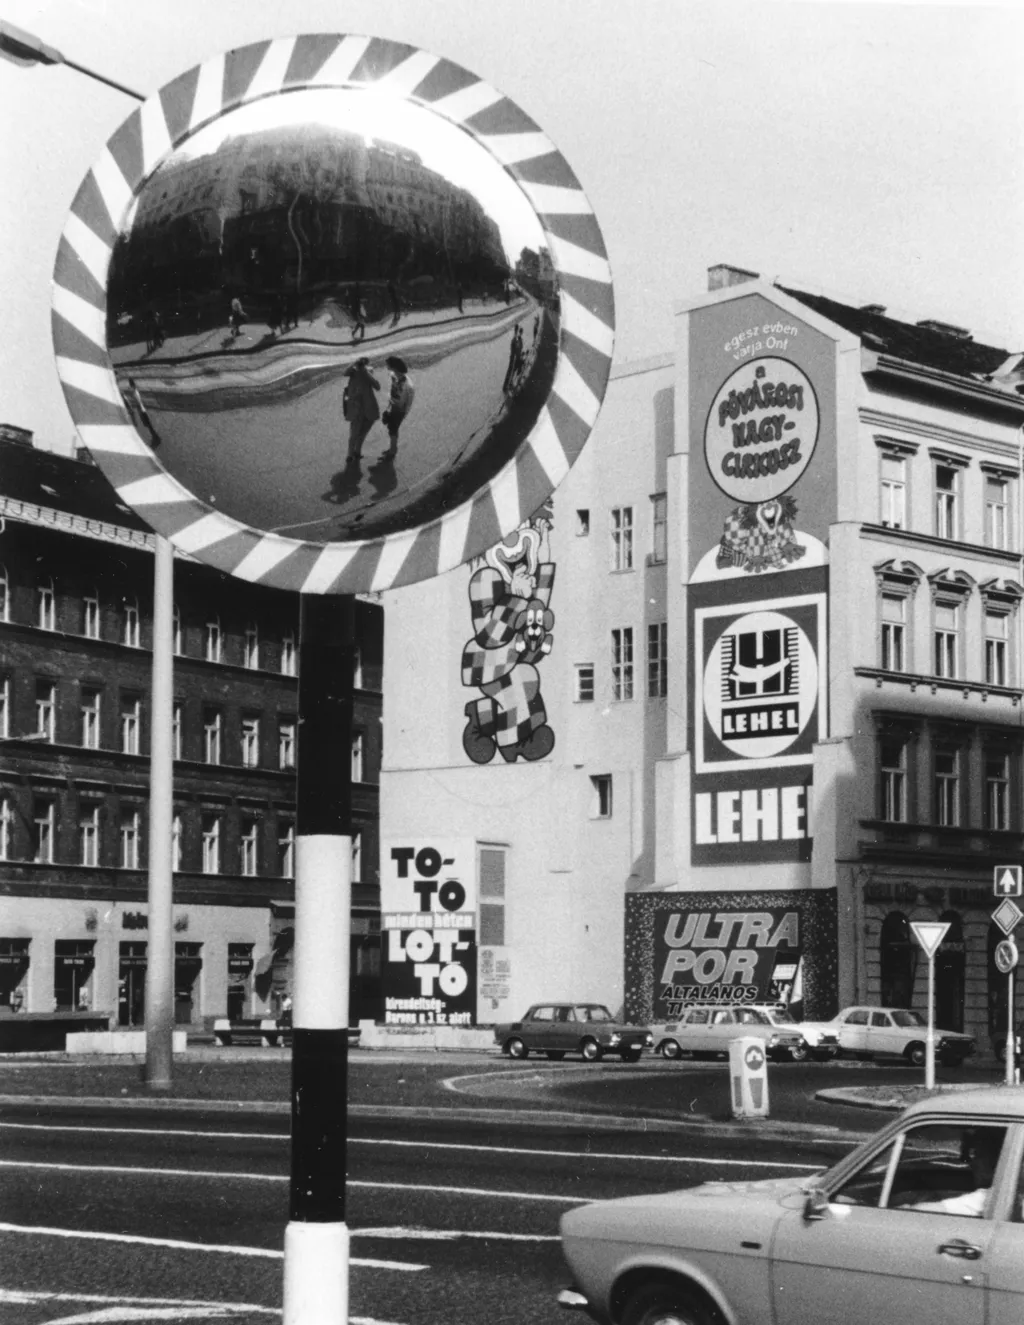 65 éve bevezették a lottót galér Magyarország,
Budapest VIII.
Kálvin tér, Baross utca - Üllői út közötti tűzfal.
ÉV
1977 